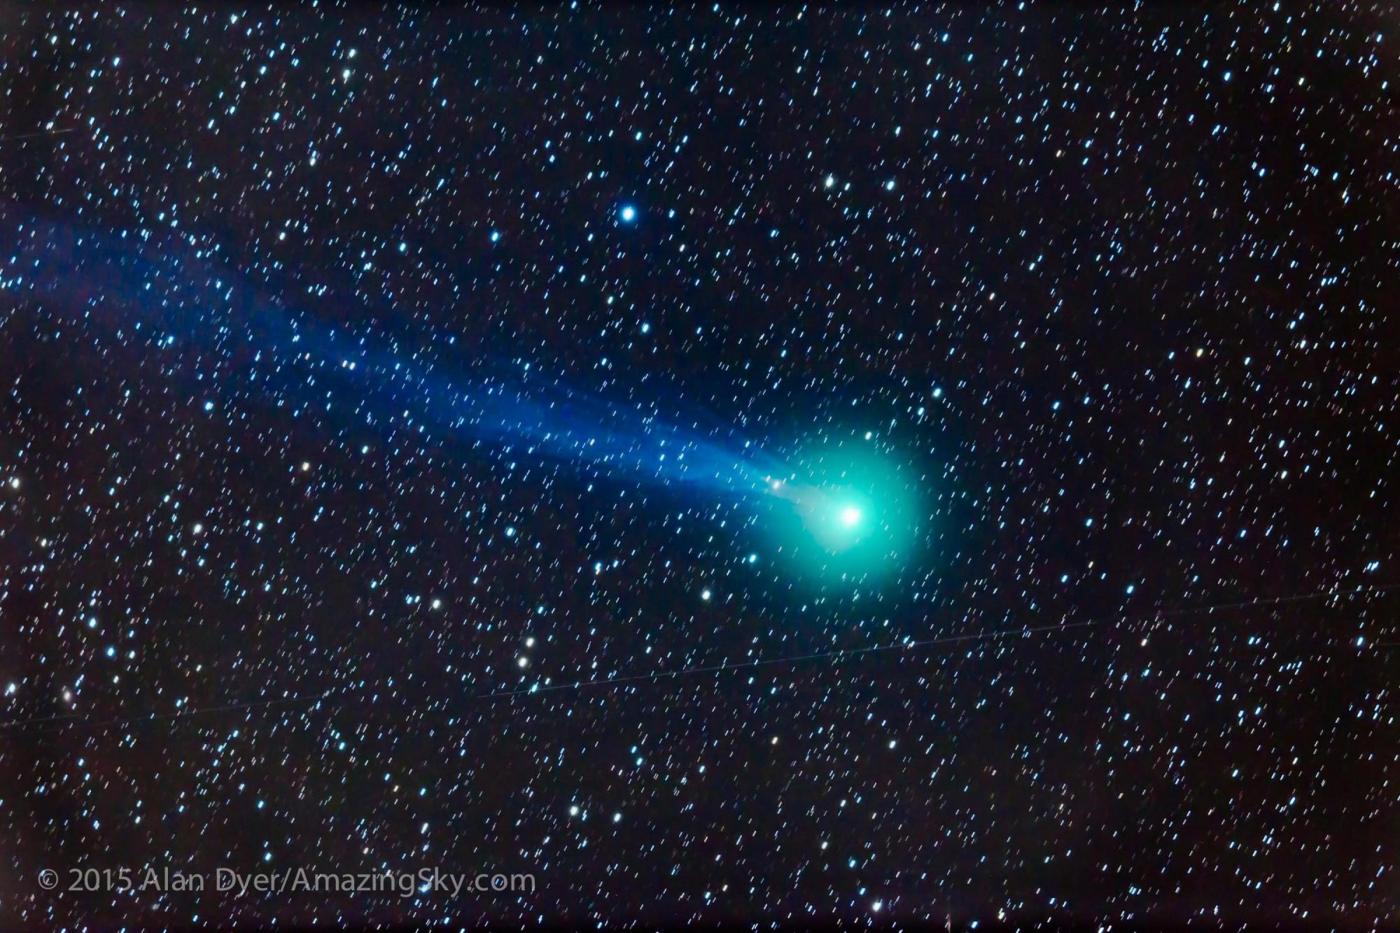 Una cometa passerà vicino alla Terra il primo di aprile (e non è uno scherzo)